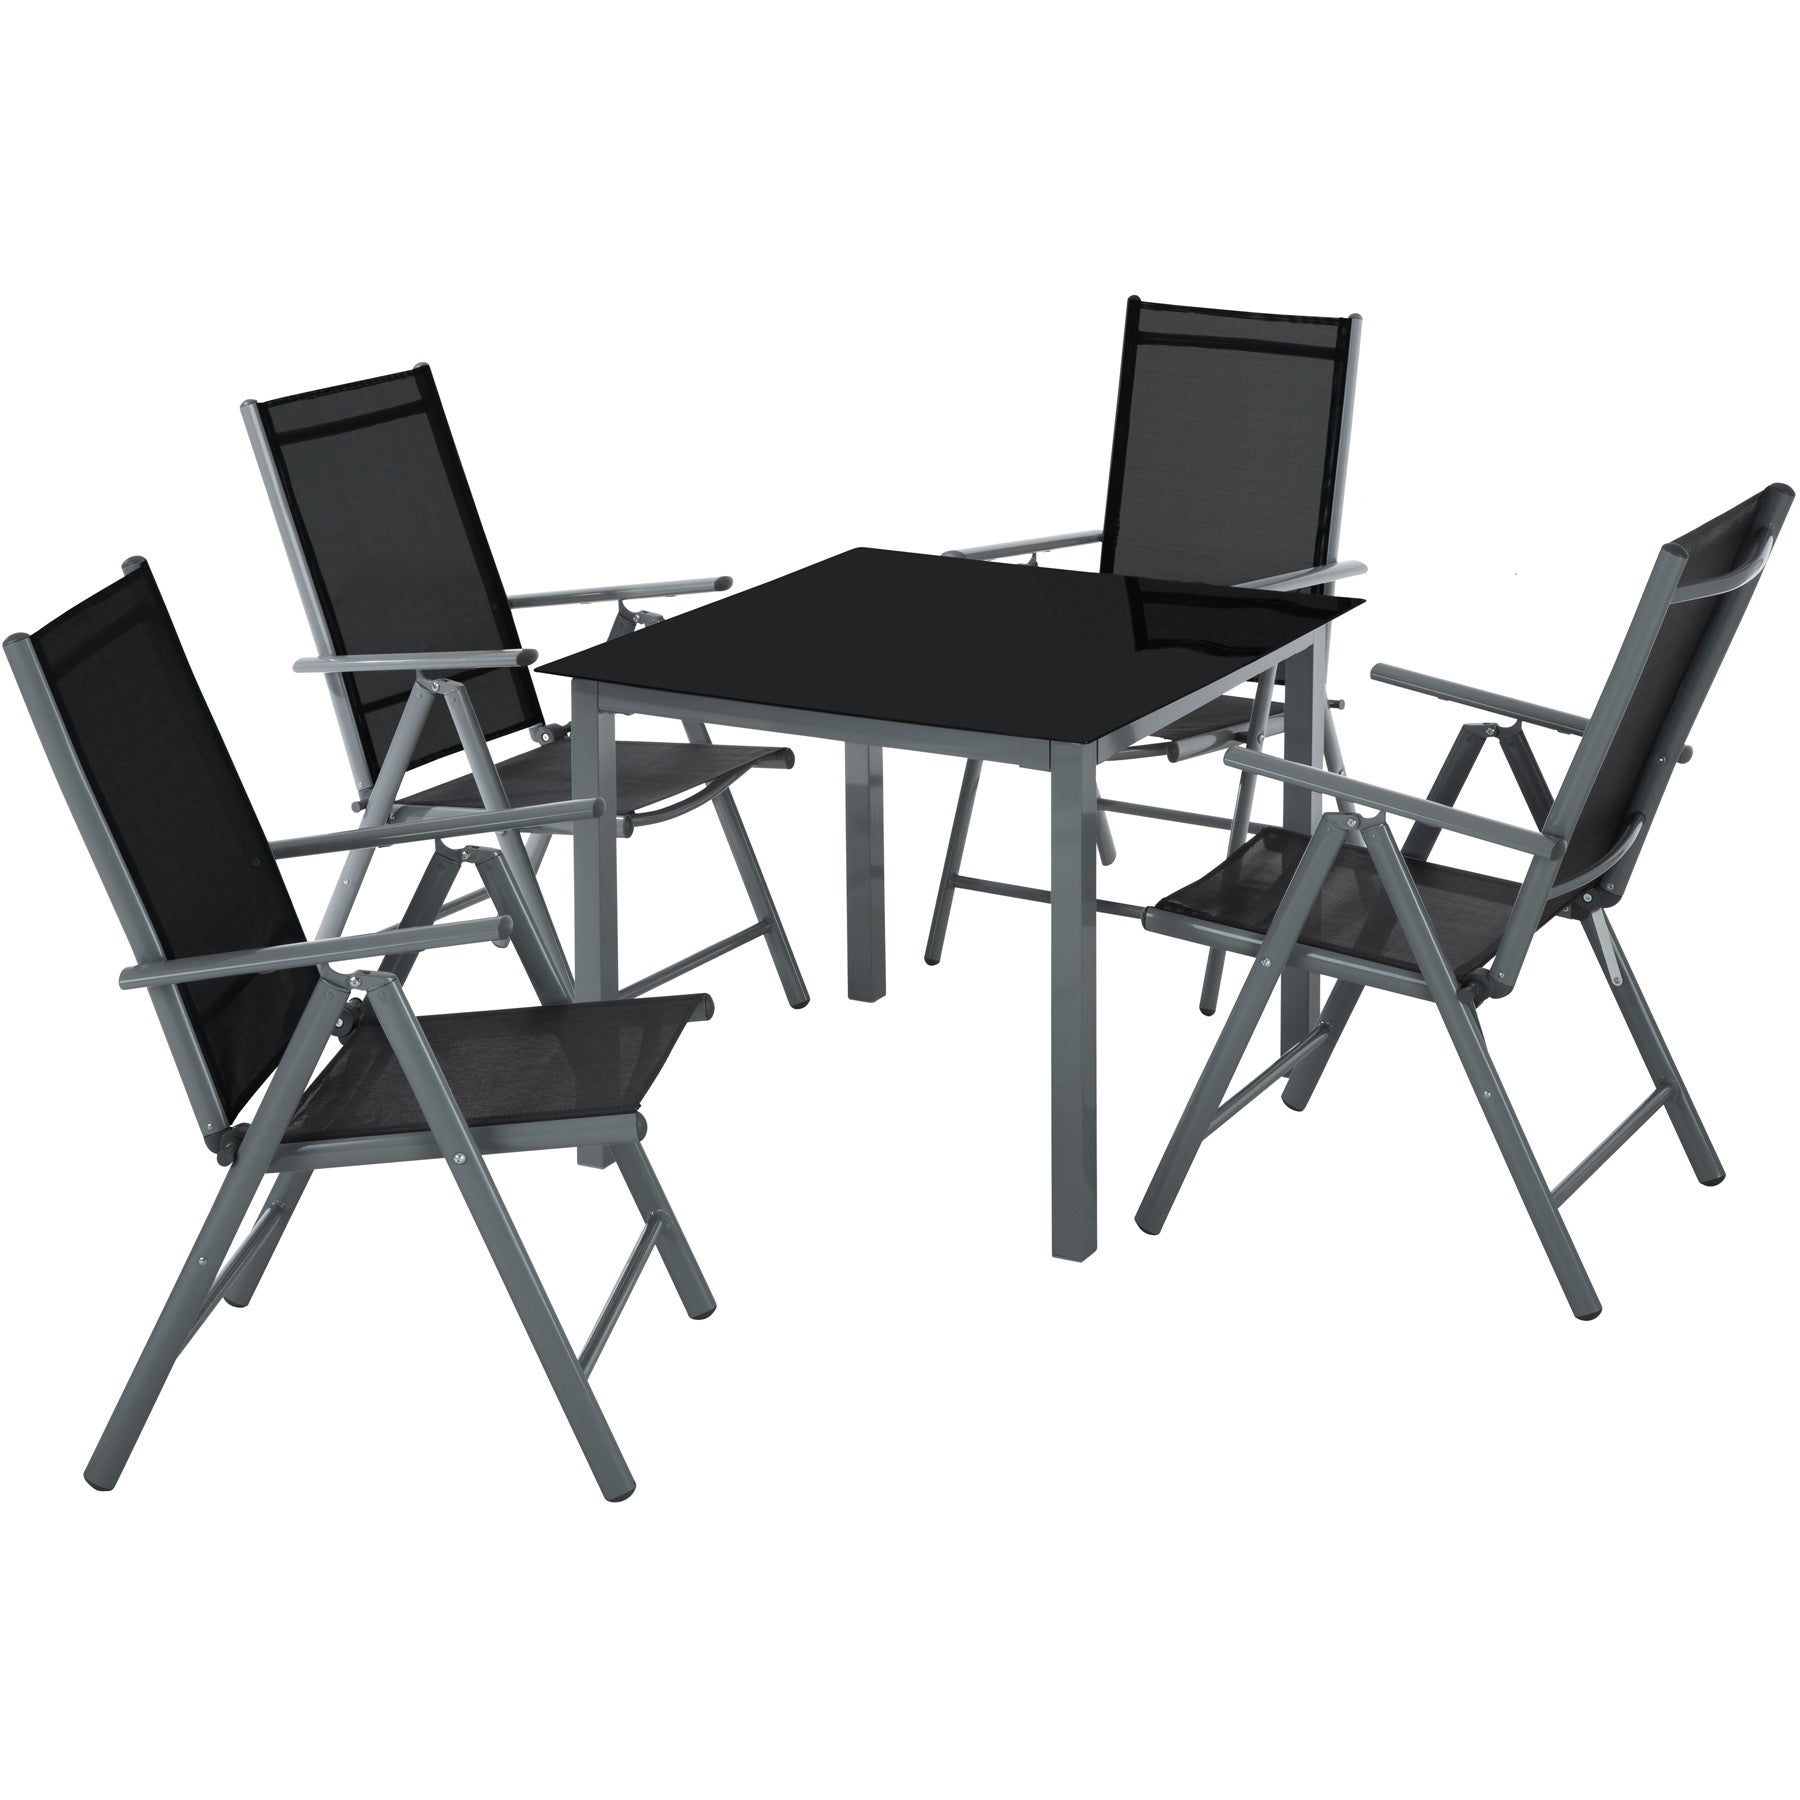 TecTake Set di alluminio sedie da giardino pieghevole con braccioli Grigio scuro | 4 sedie | no. 401634 disponibile in diversi colori e quantità 